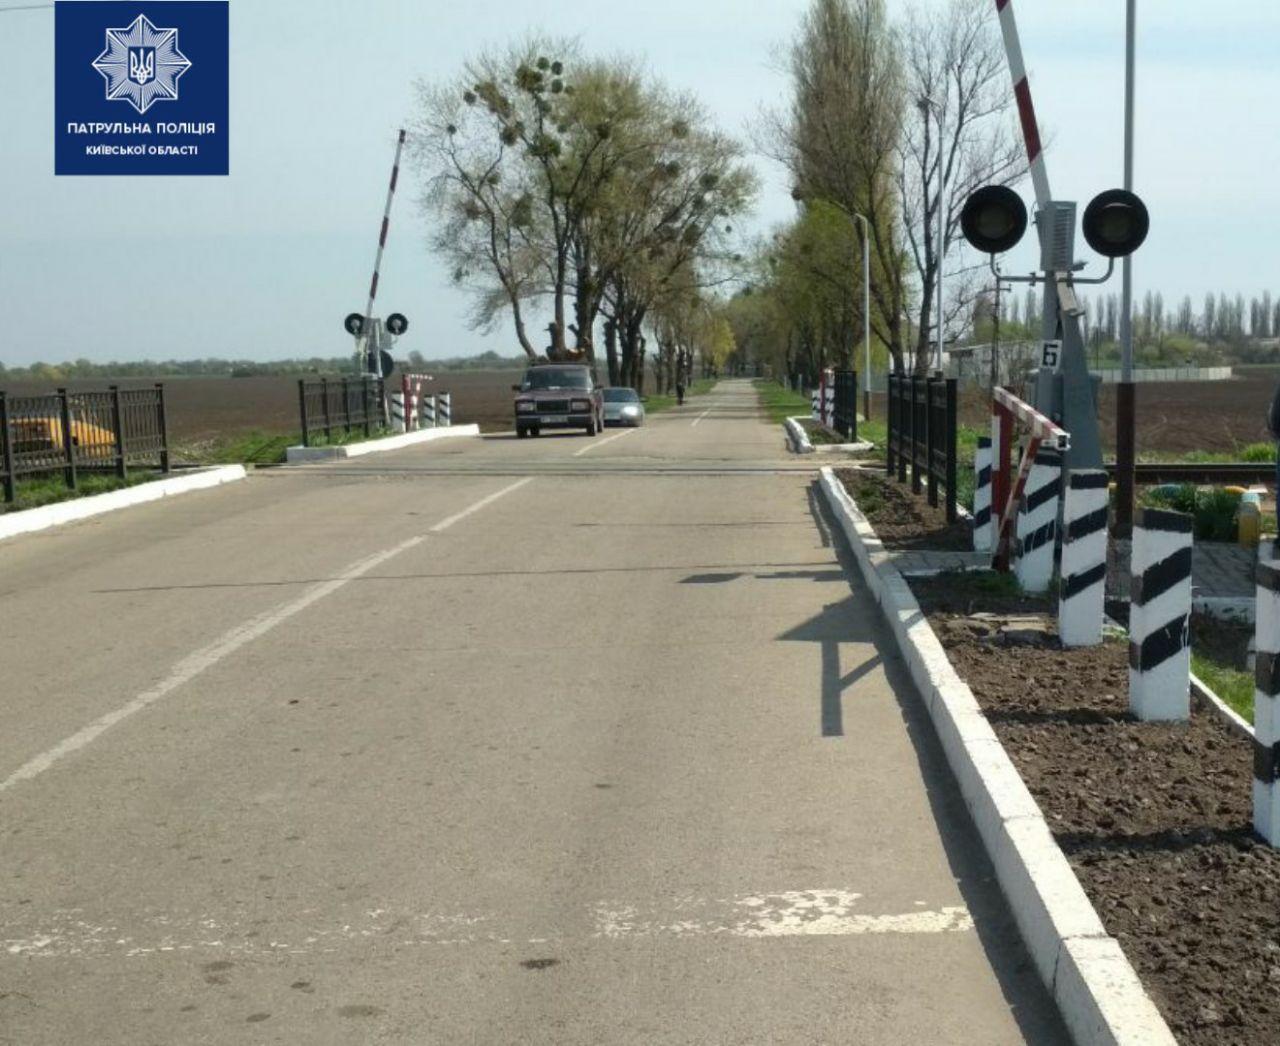 Завтра, 22 мая, будет закрыто движение автотранспорта через железнодорожный переезд в Калиновке